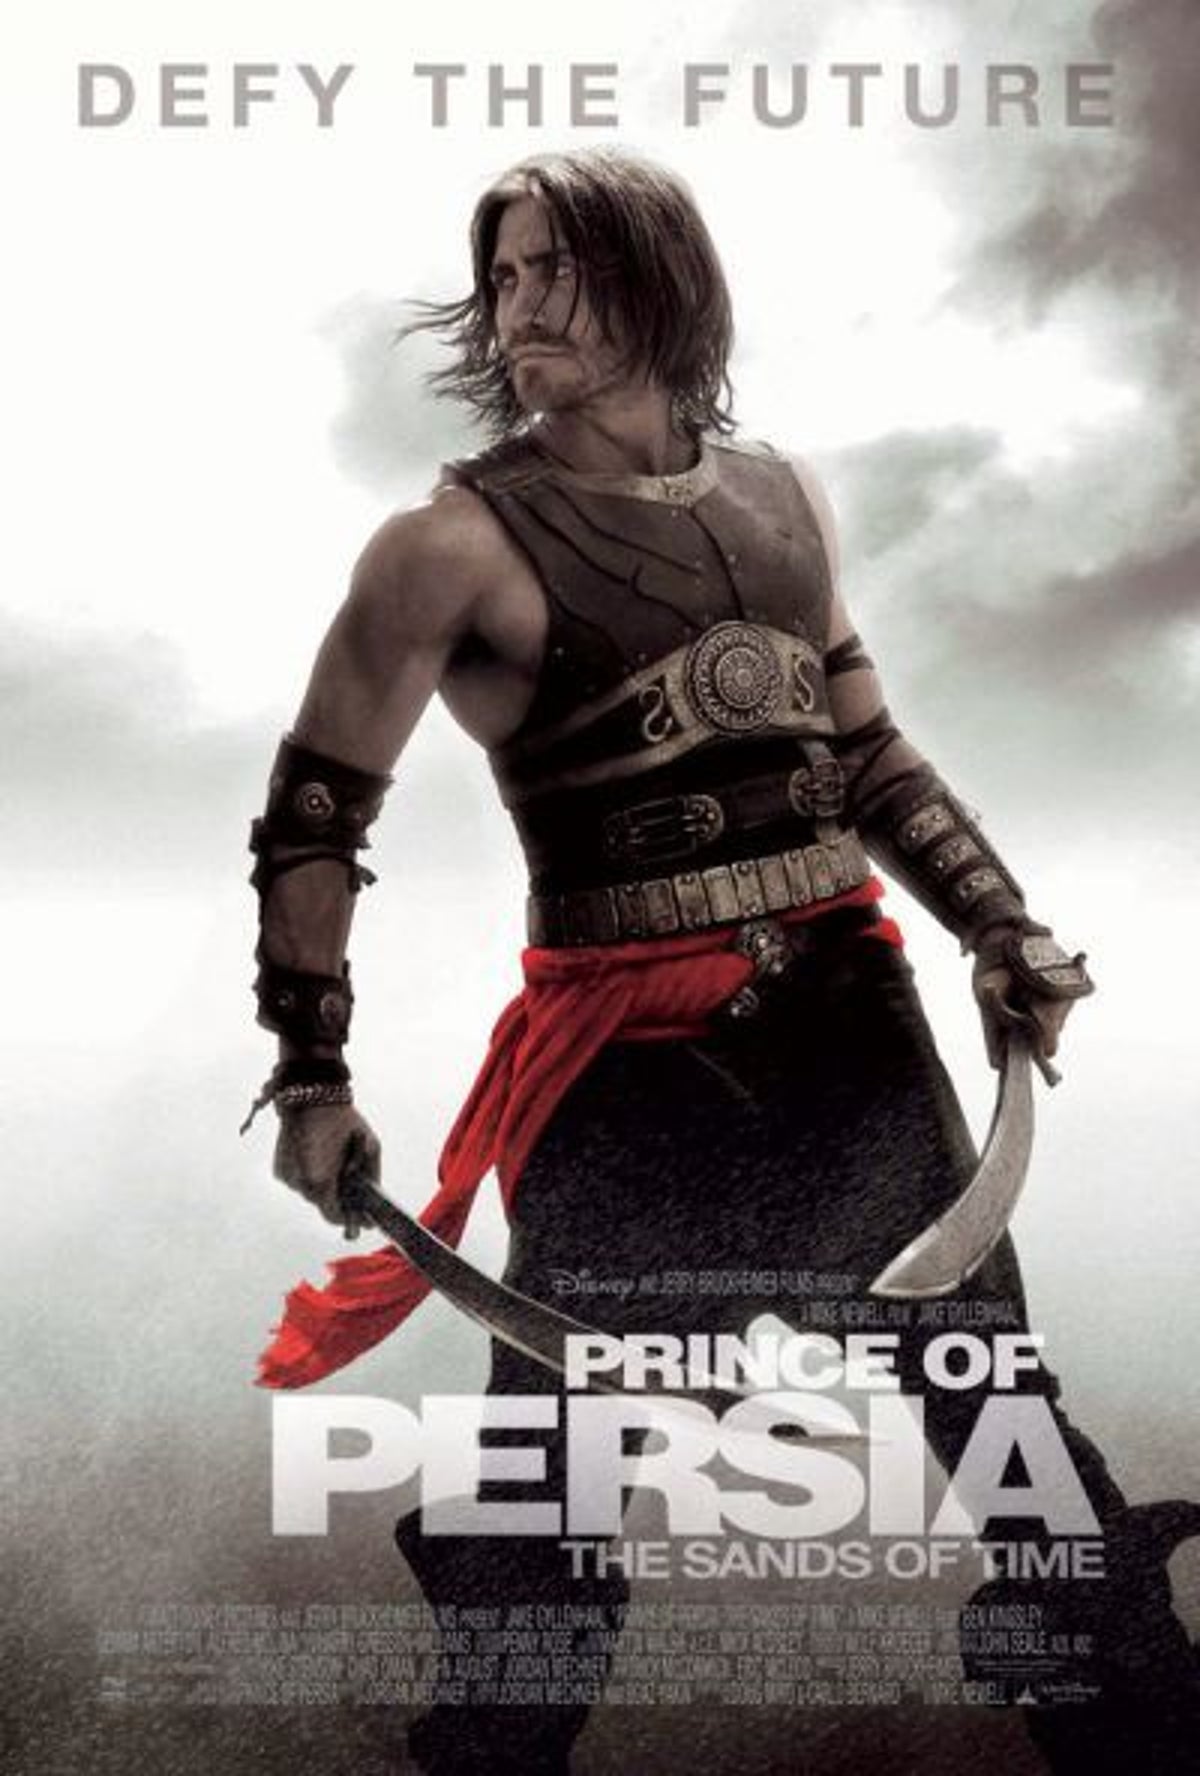 Prince of Persia Movie Trailer 